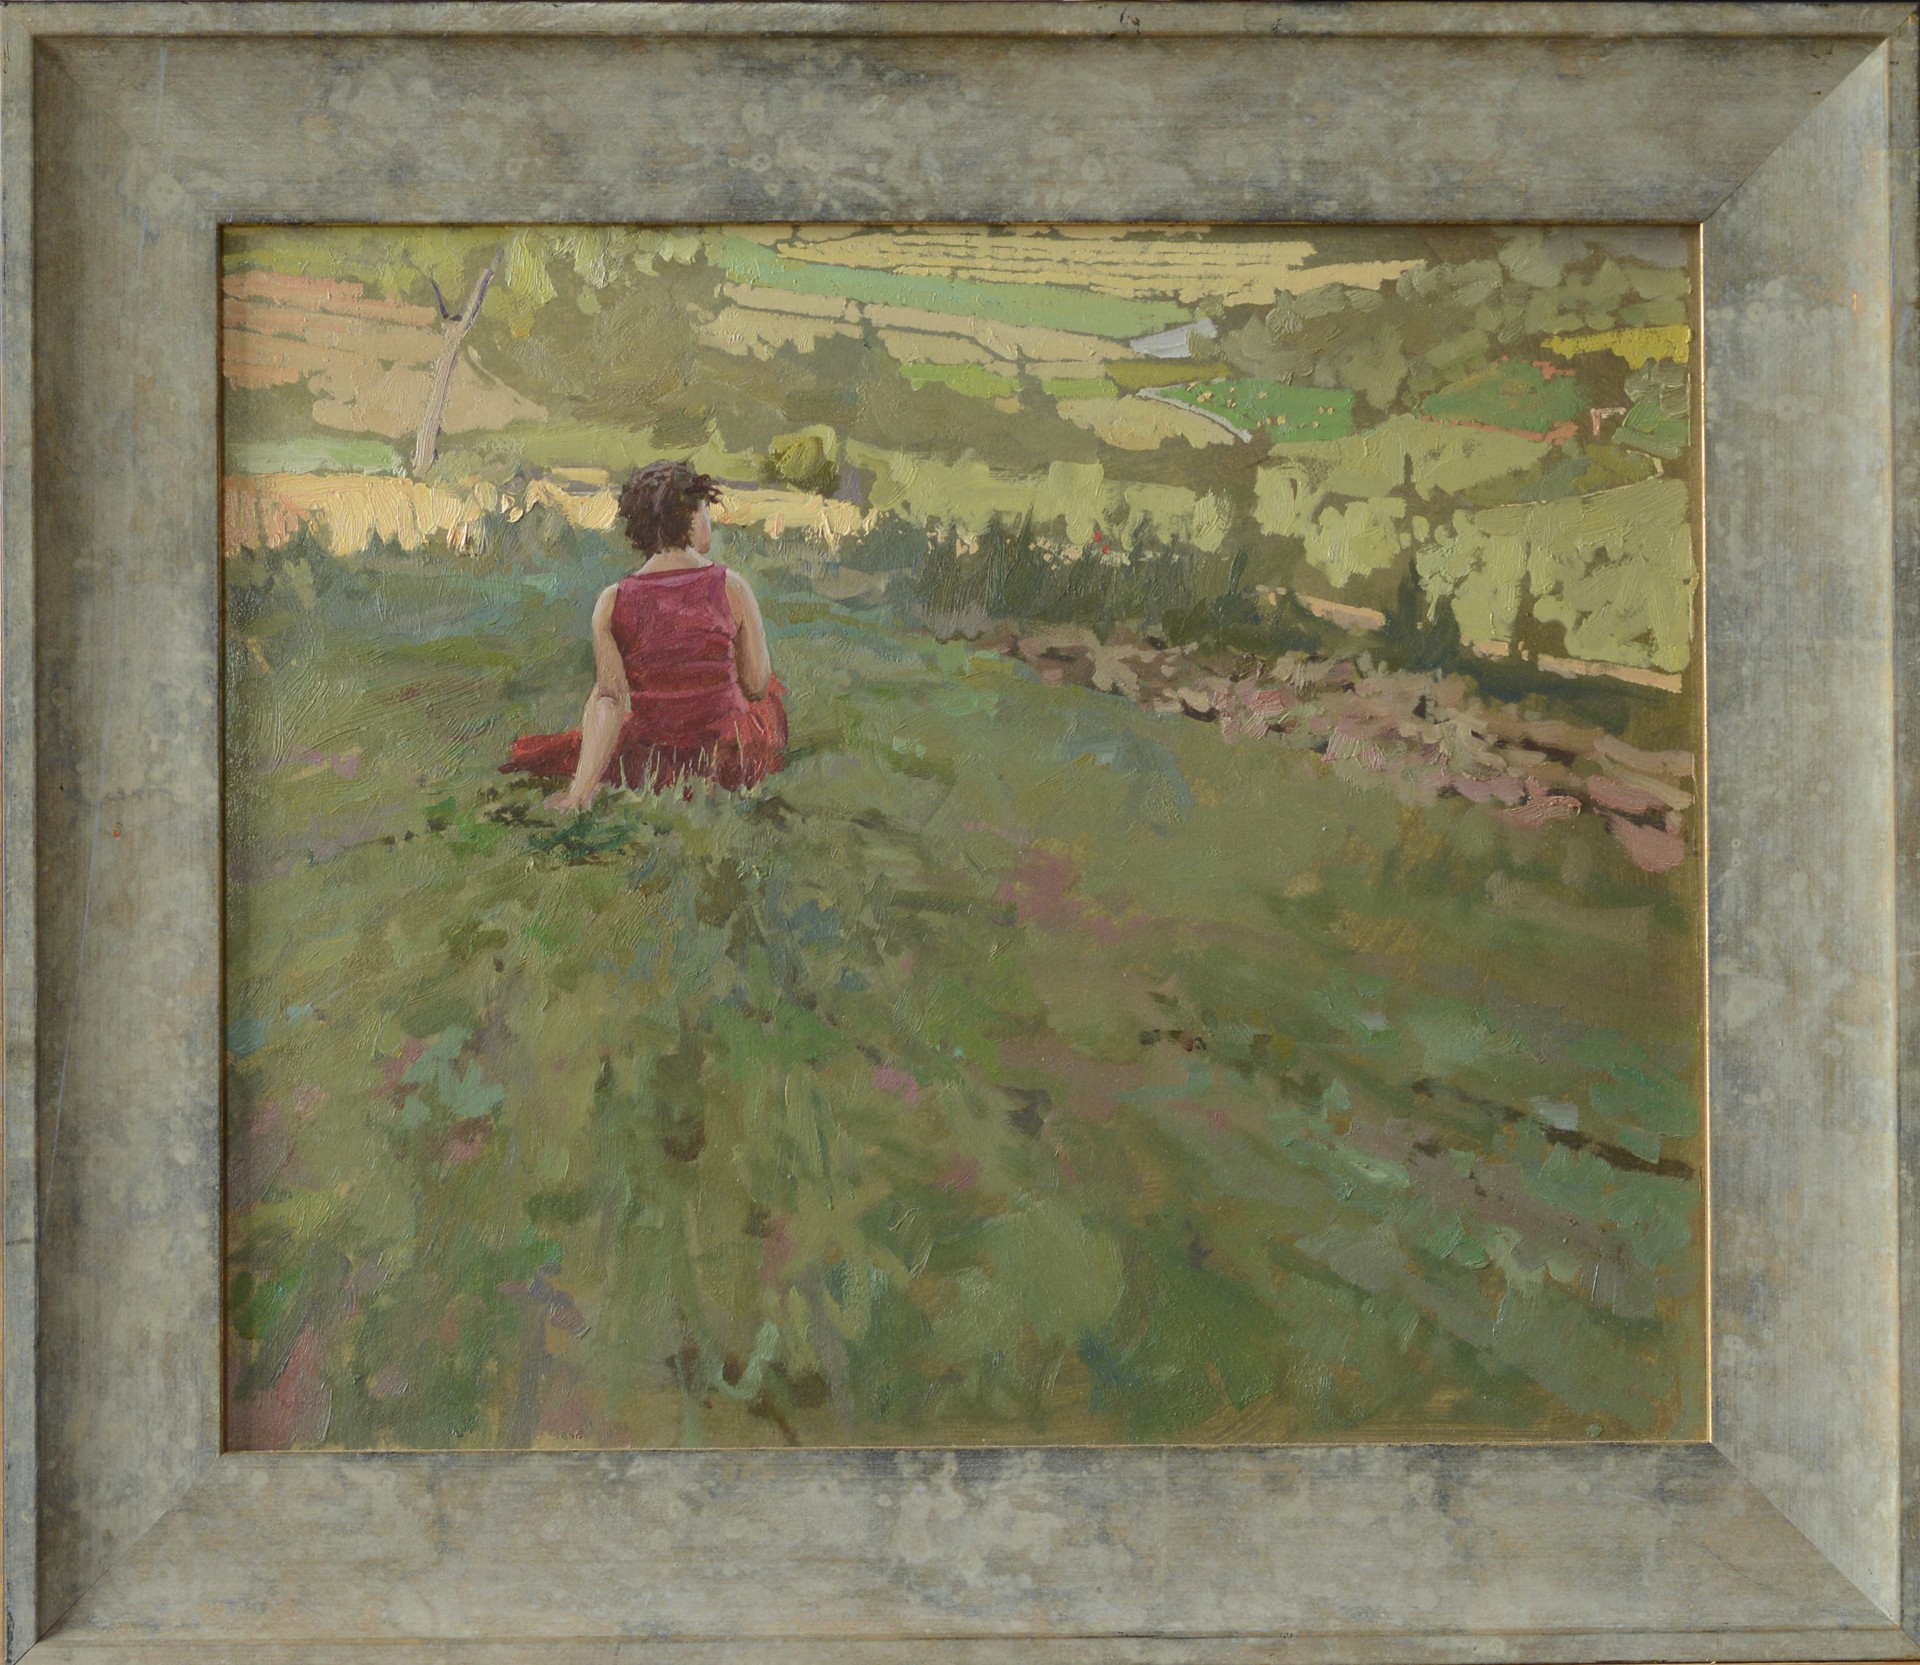 Kate in Her Fields by Daud Akhriev